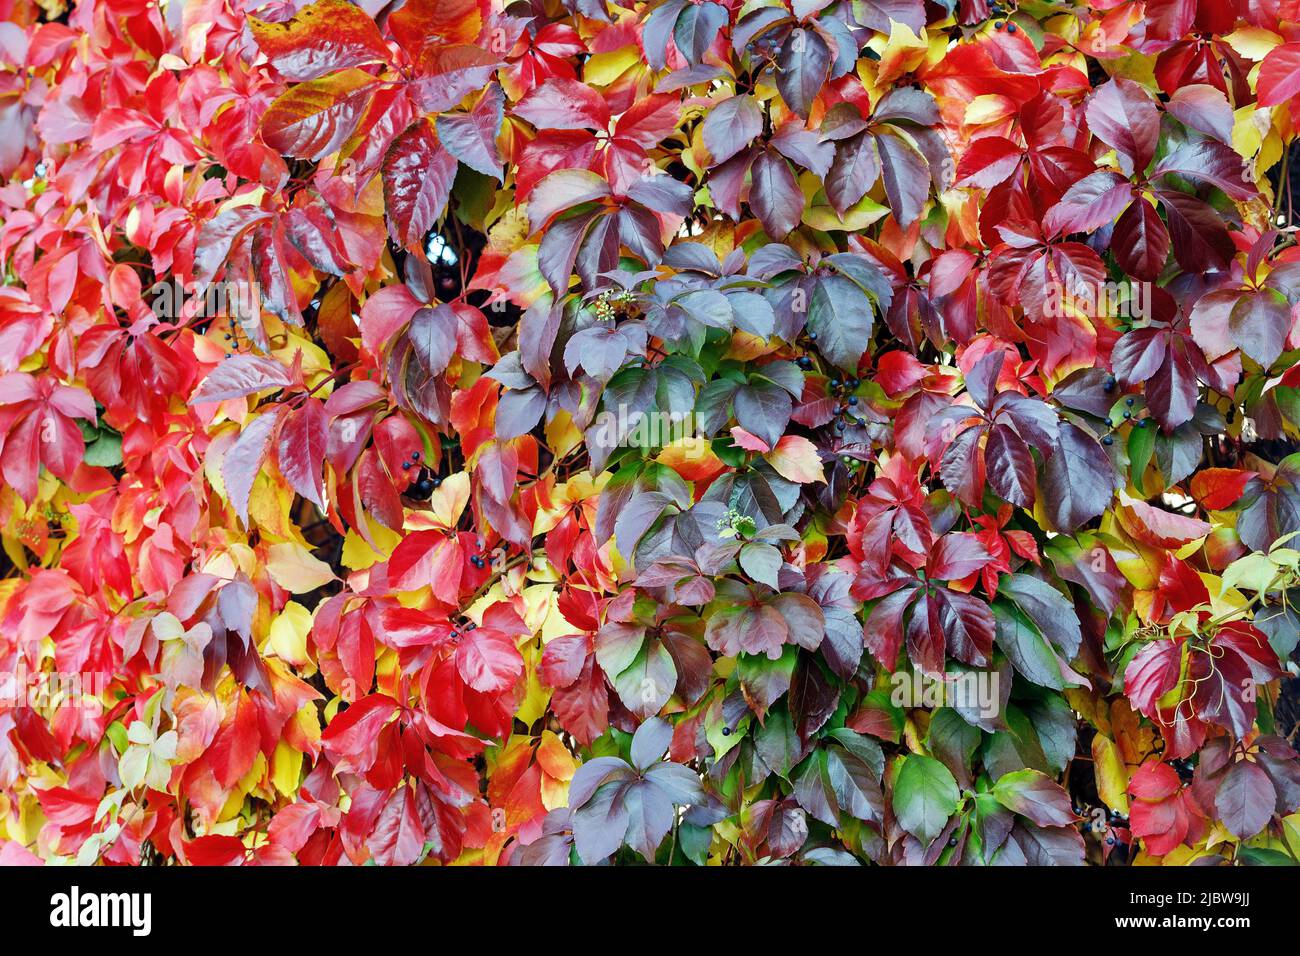 Farbenfrohe rote und grüne Blätter einer Virginia Creeper (Parthenocissus quinquefolia) Rebe Pflanze im Herbst. Stockfoto